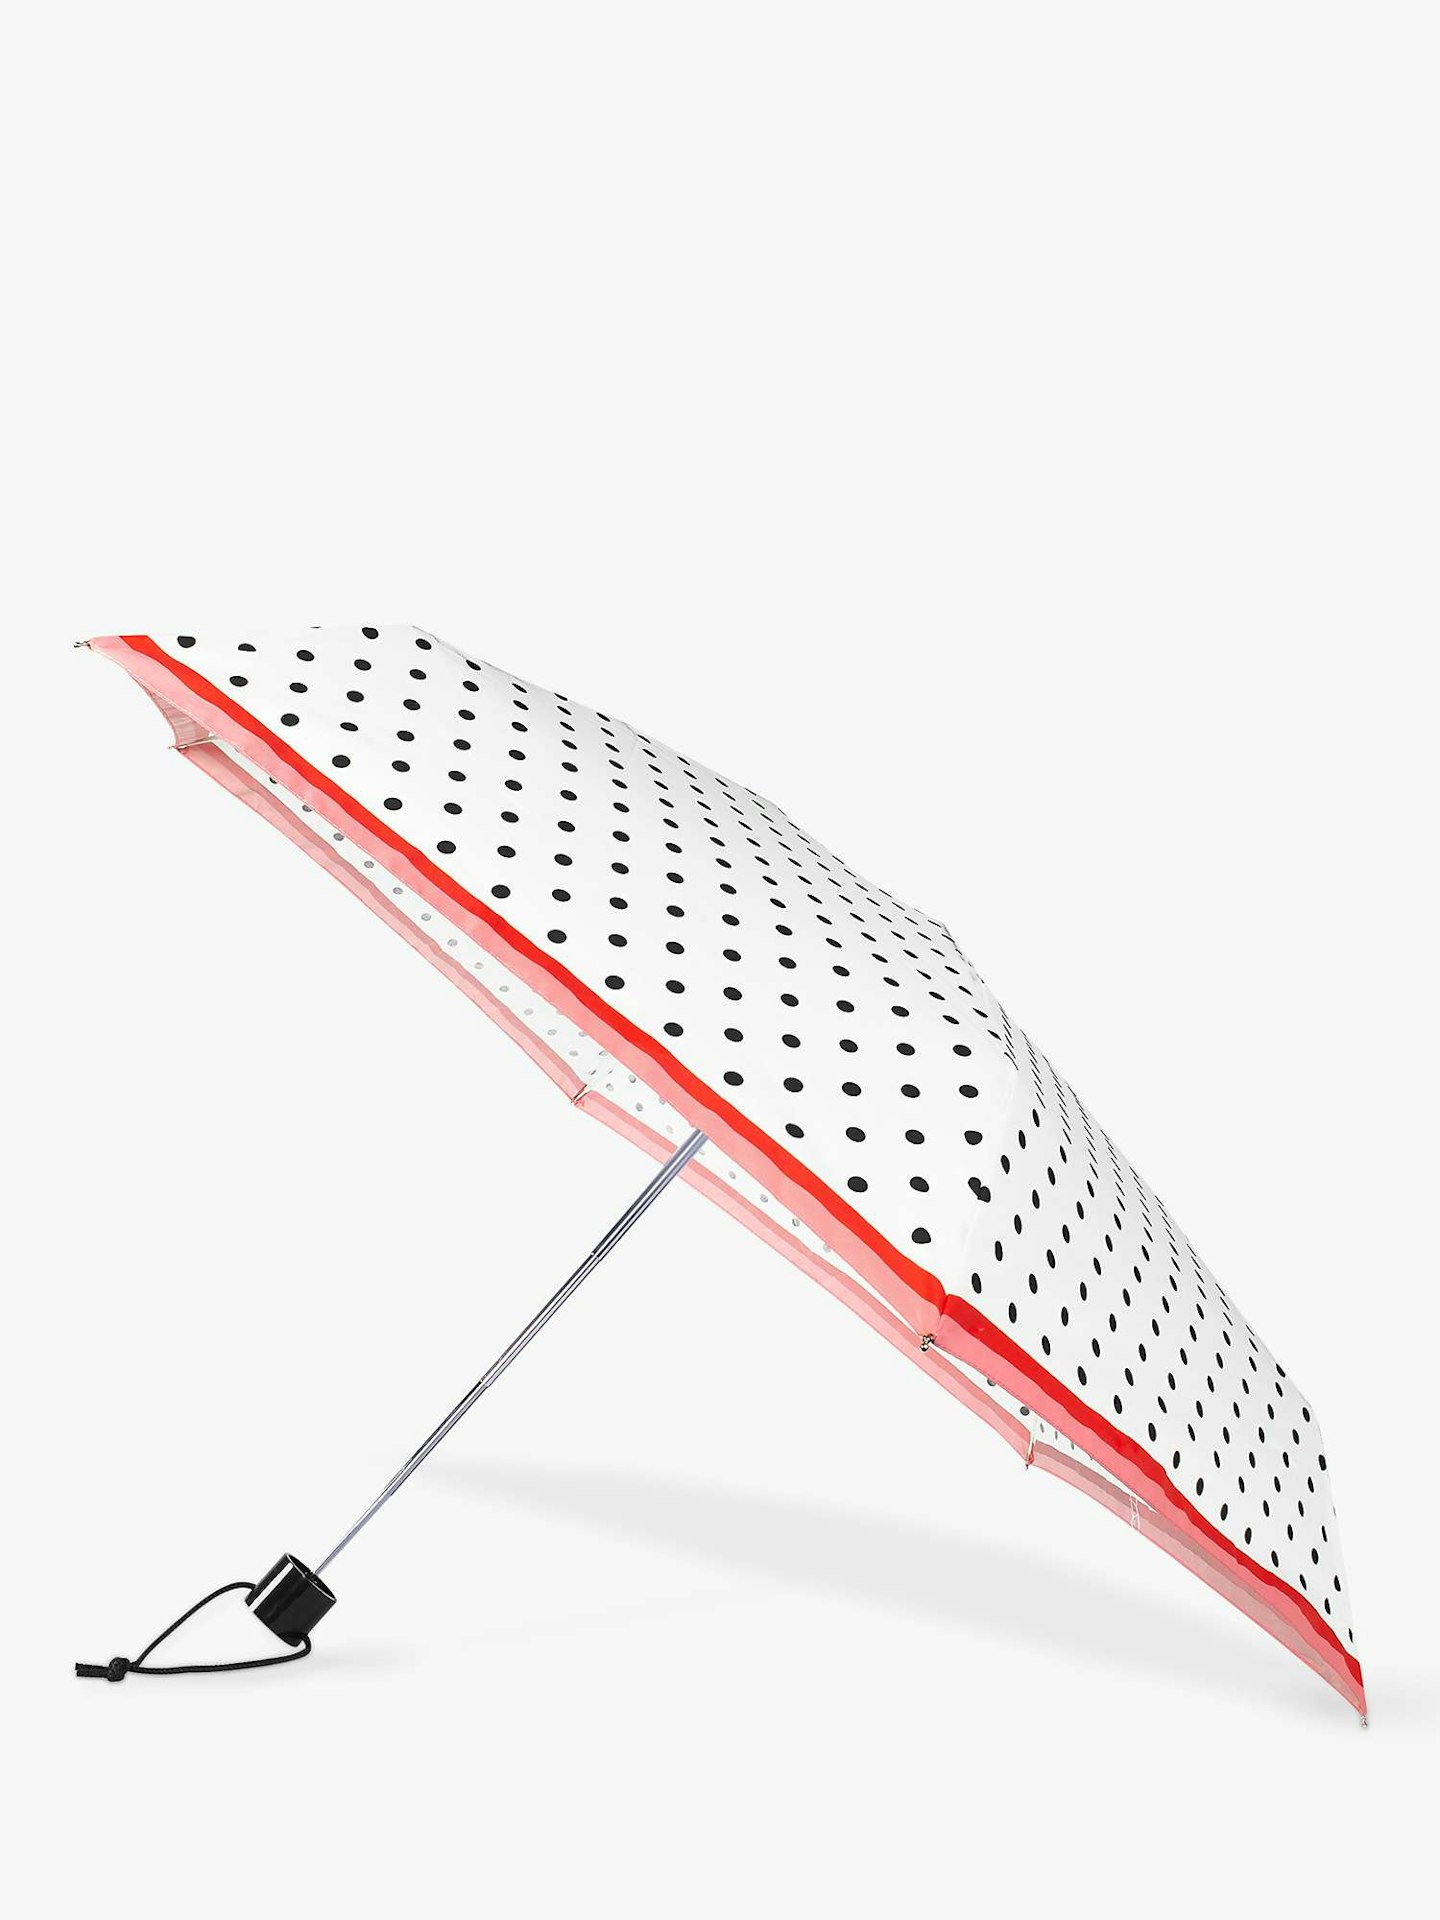 kate spade new york, Dot Compact Umbrella